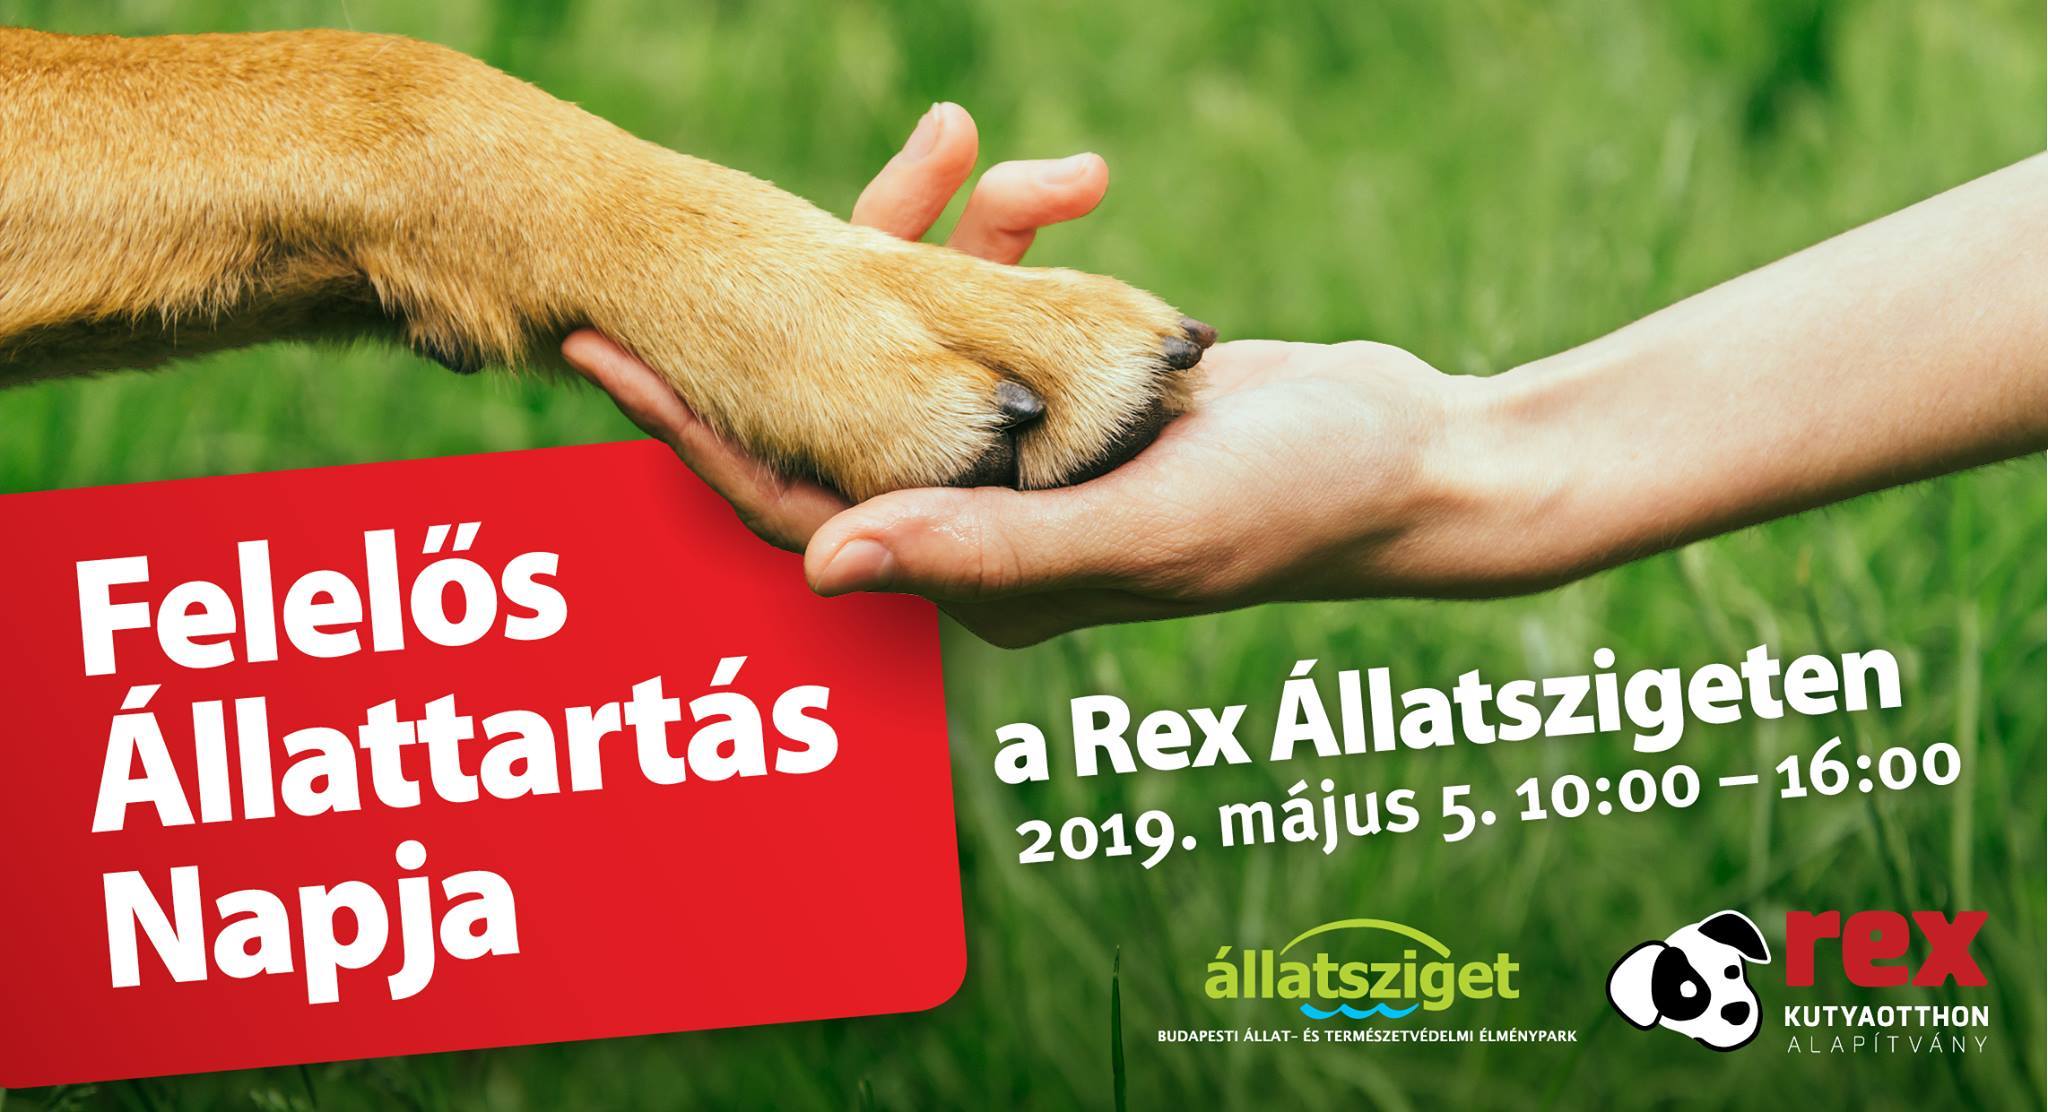 Felelős Állattartás Napja 2019